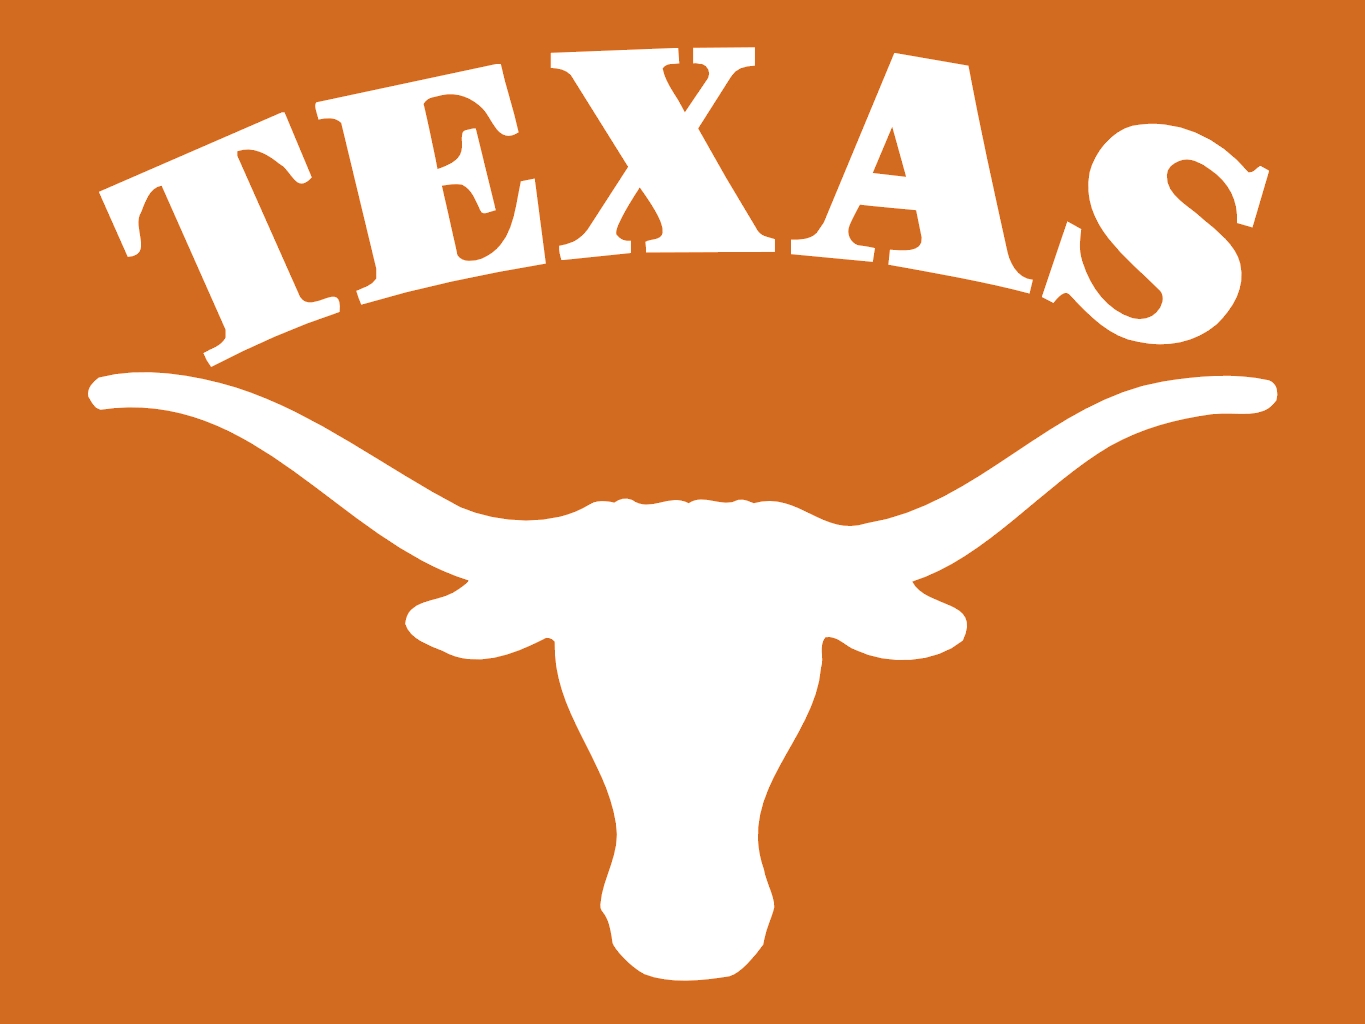 5. Texas Flag Nail Design - wide 2